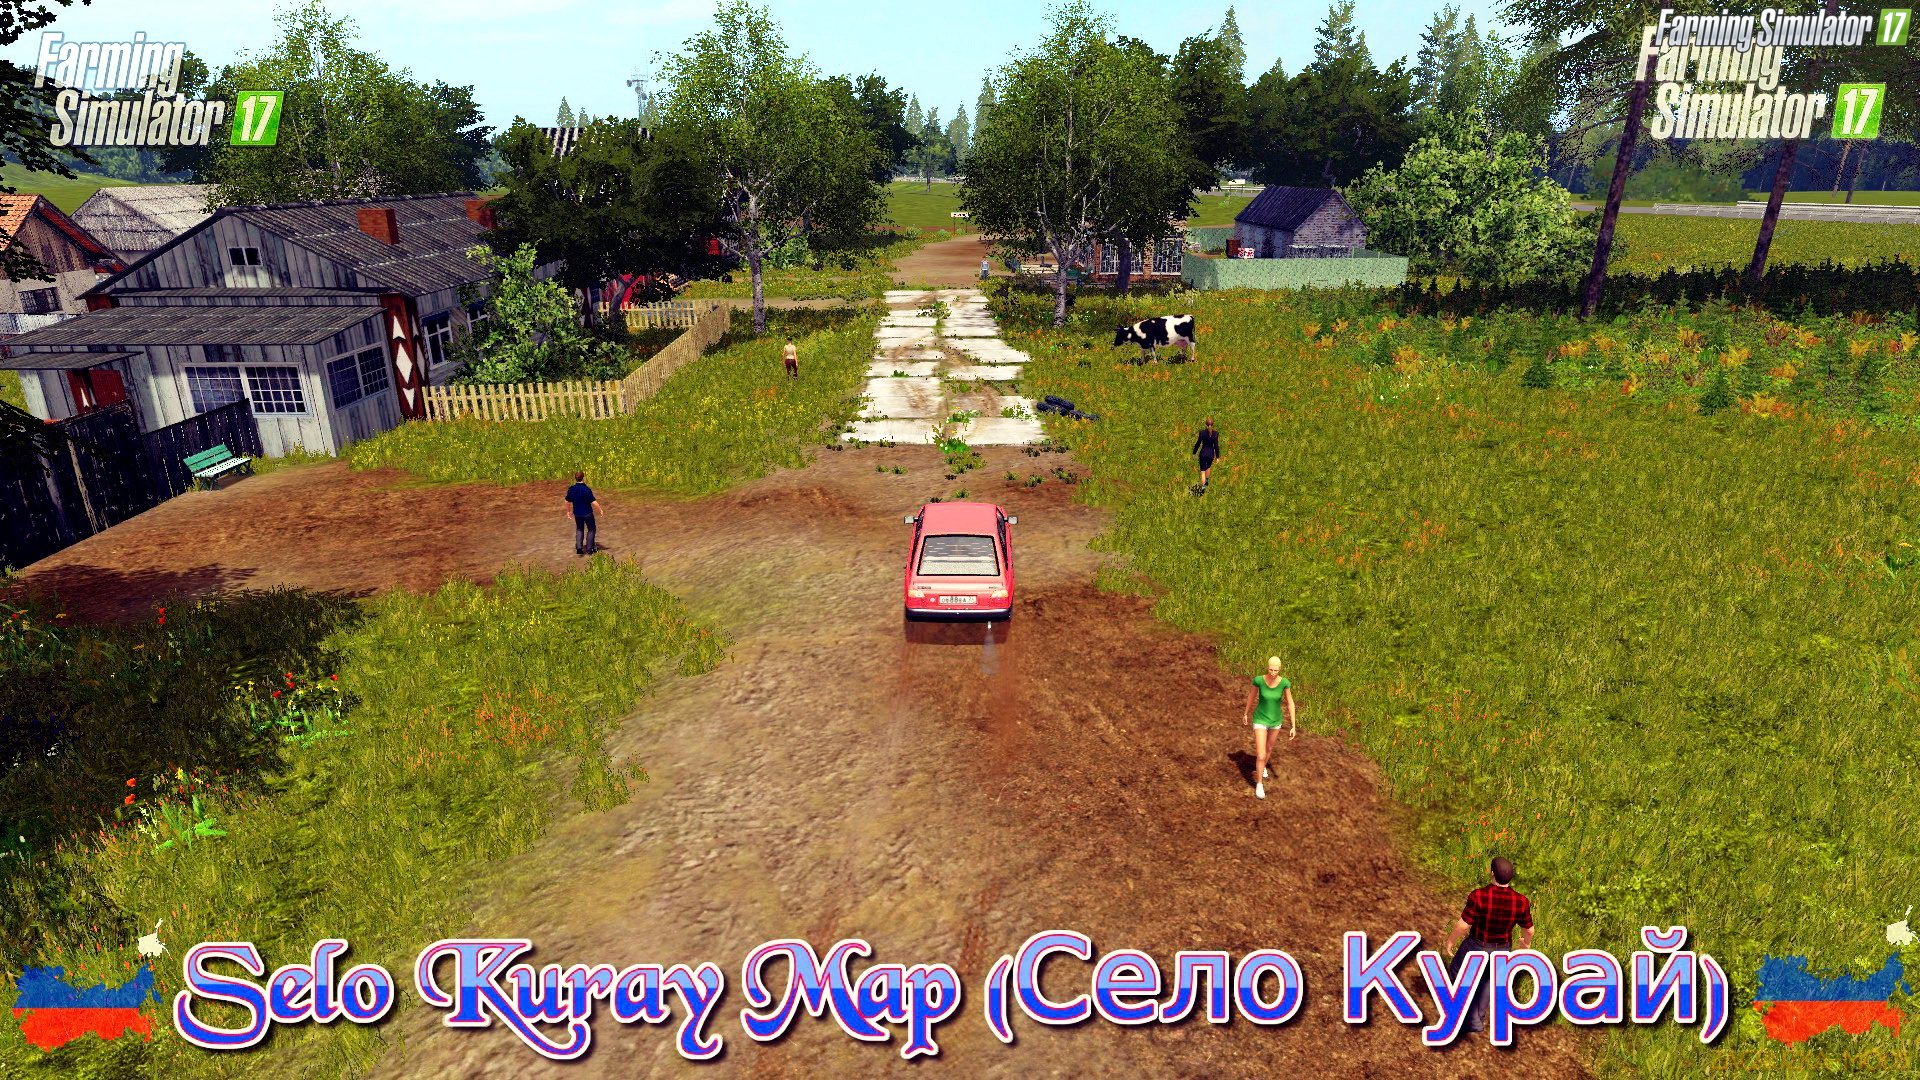 Selo Kuray Map v1.3 for FS 17